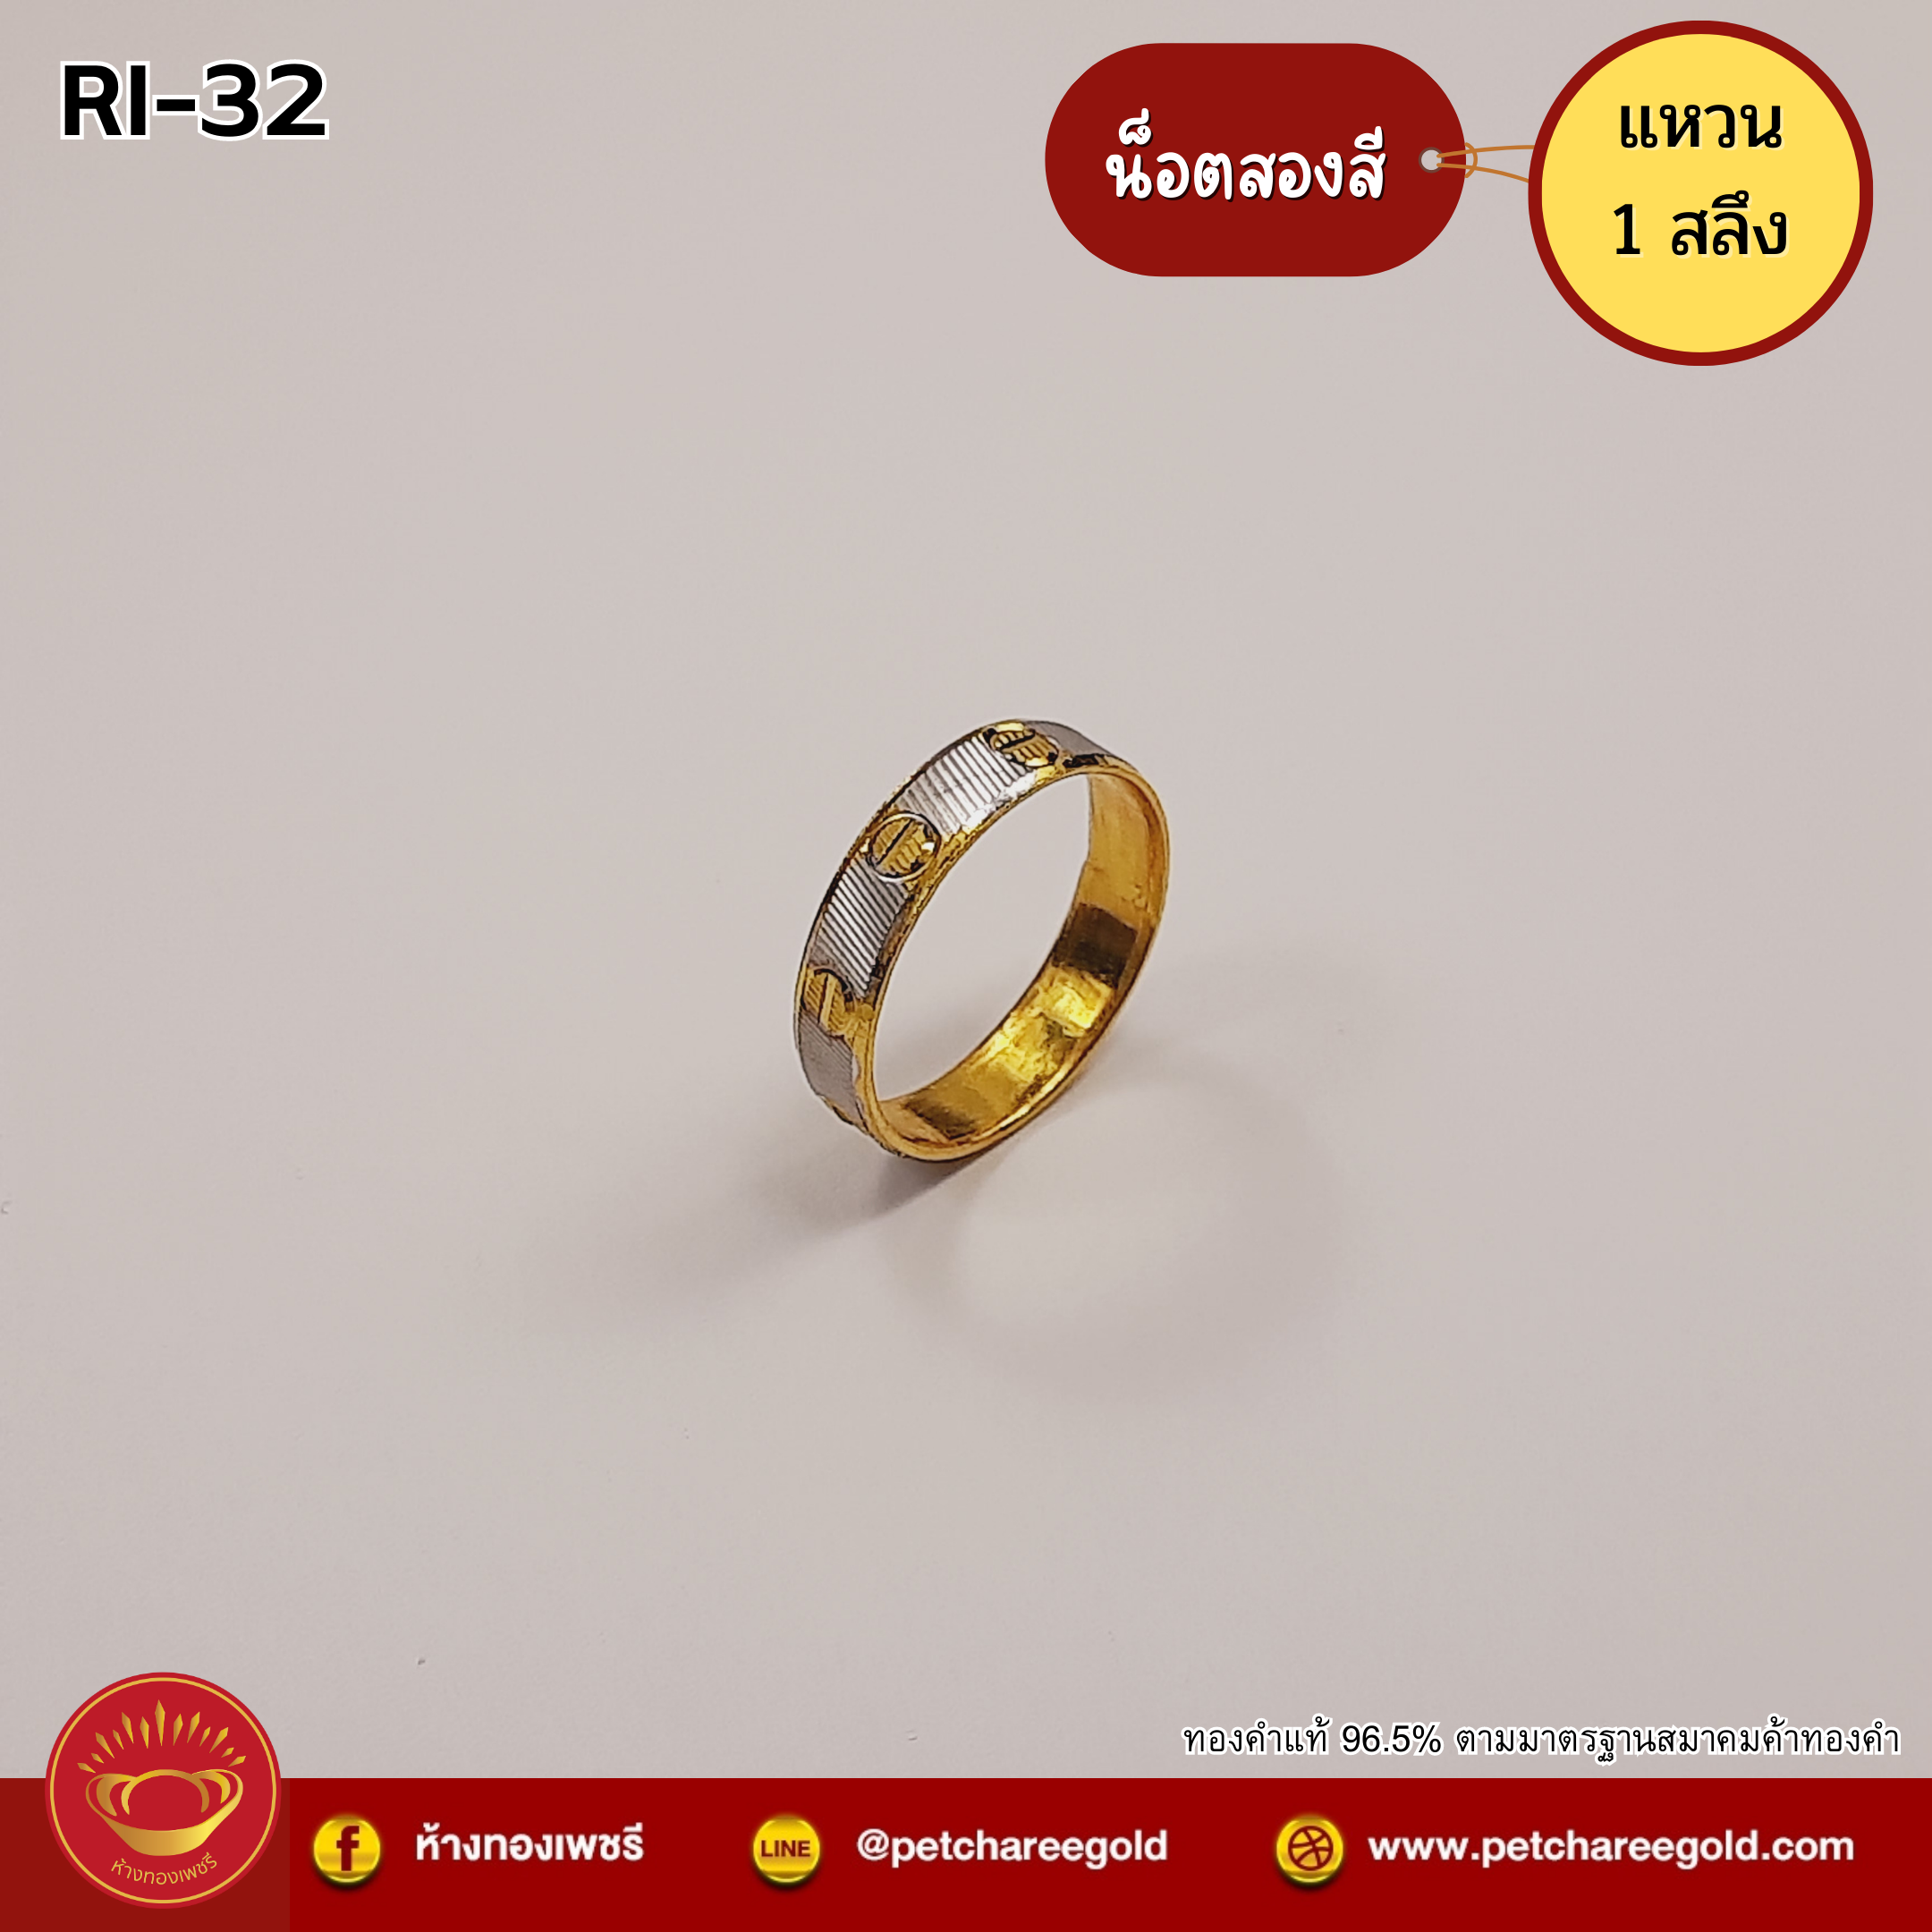 แหวนทองคำแท้ 1 สลึง ลายน็อตสองสี RI-32